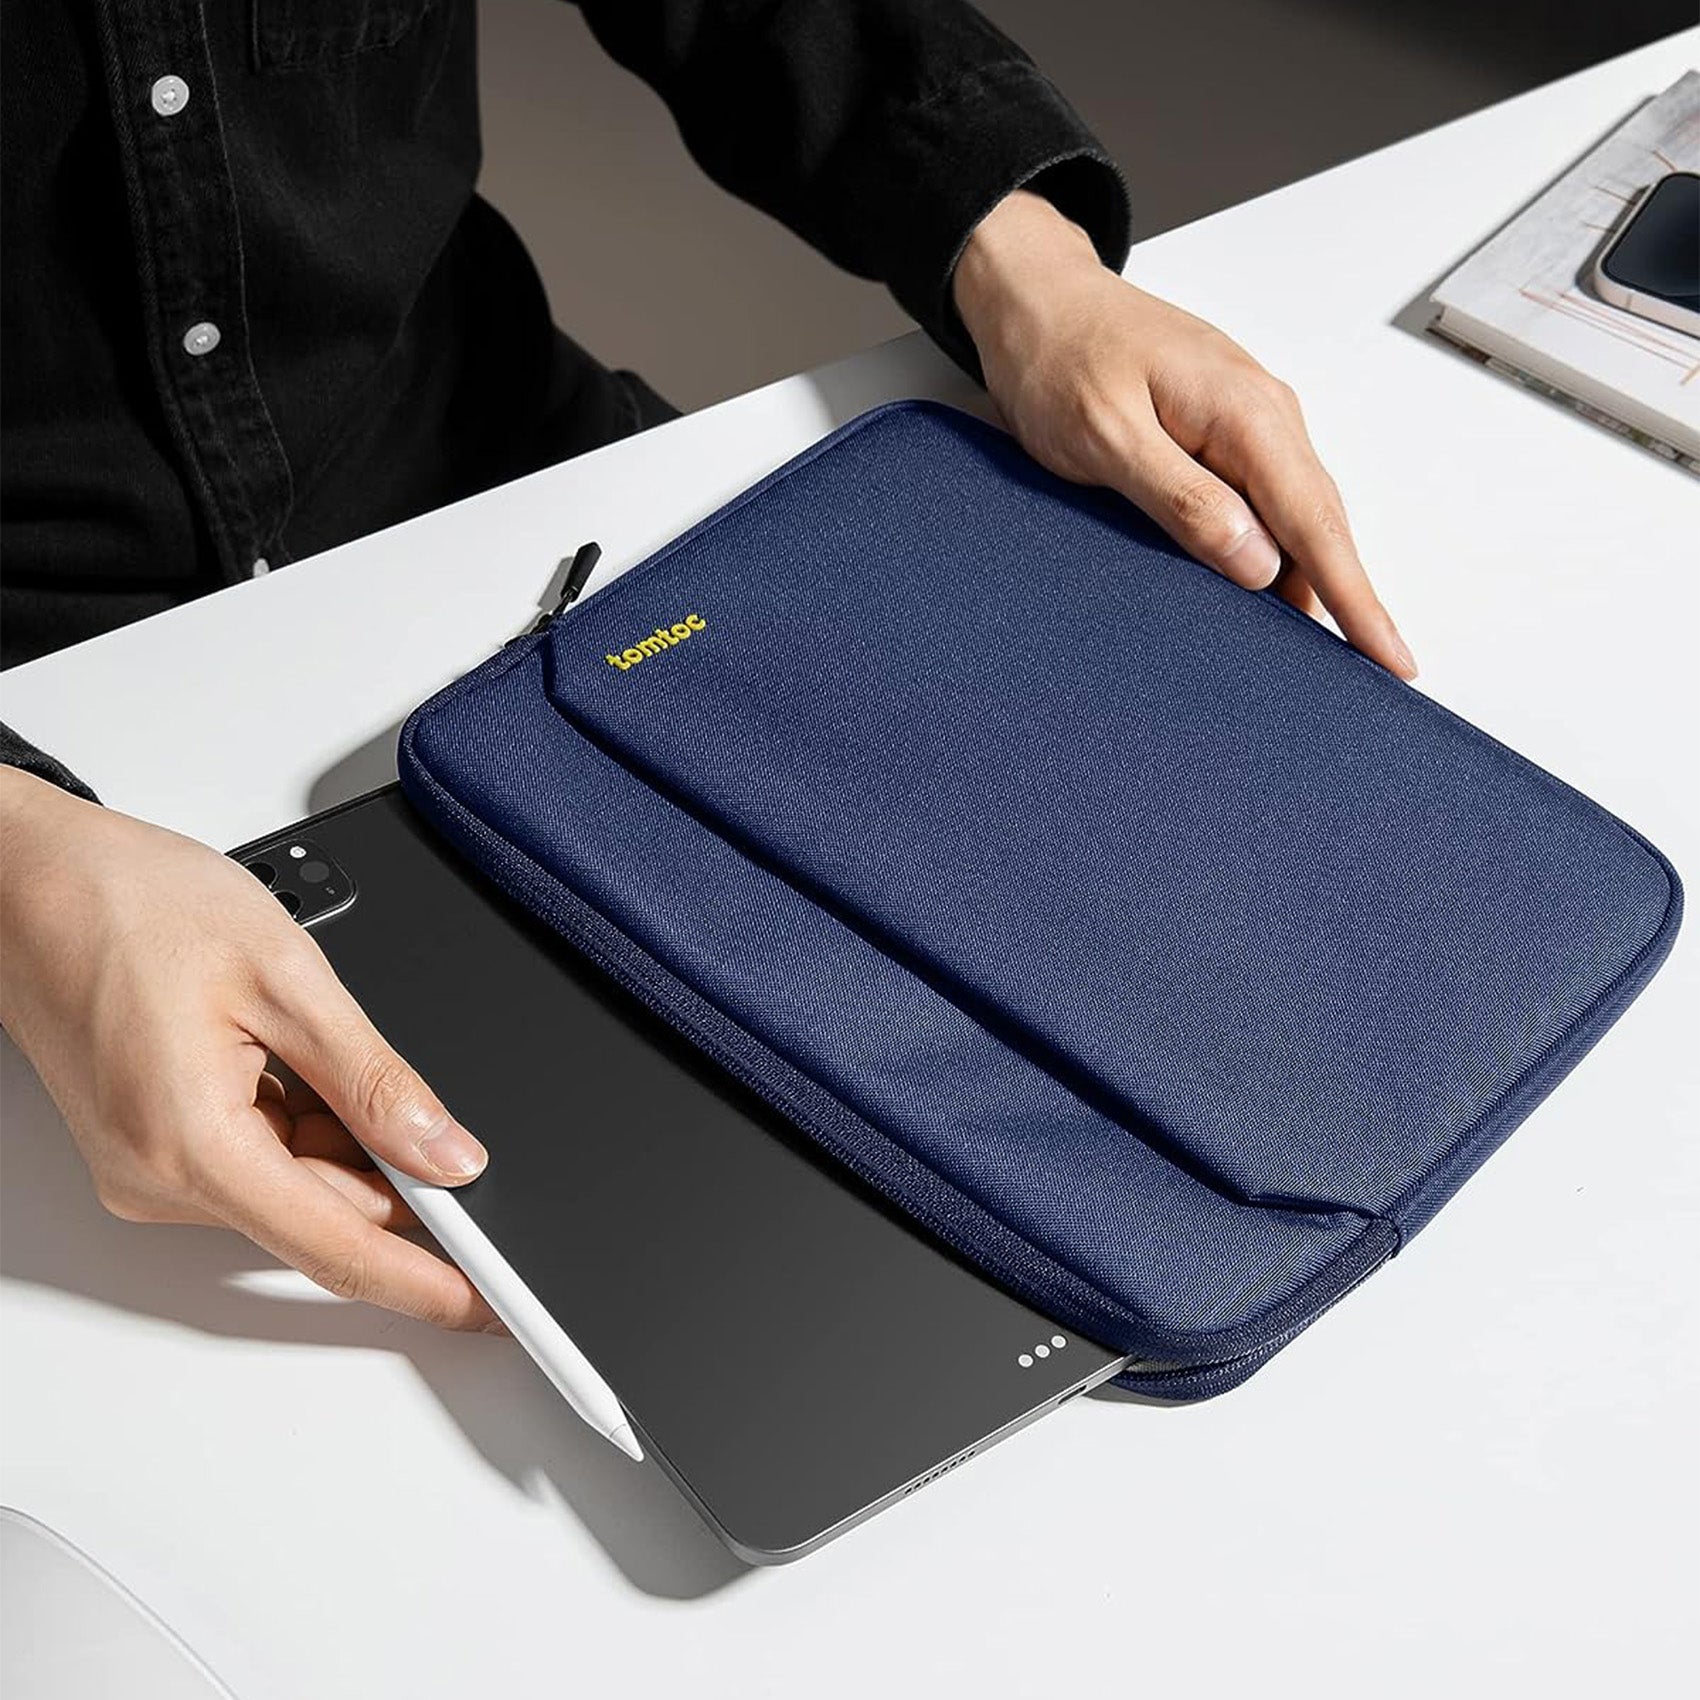 tomtoc 11 Inch Tablet Sleeve Bag - iPad Pro 11 / iPad Air 10.9 / iPad 10.2 - Navy Blue